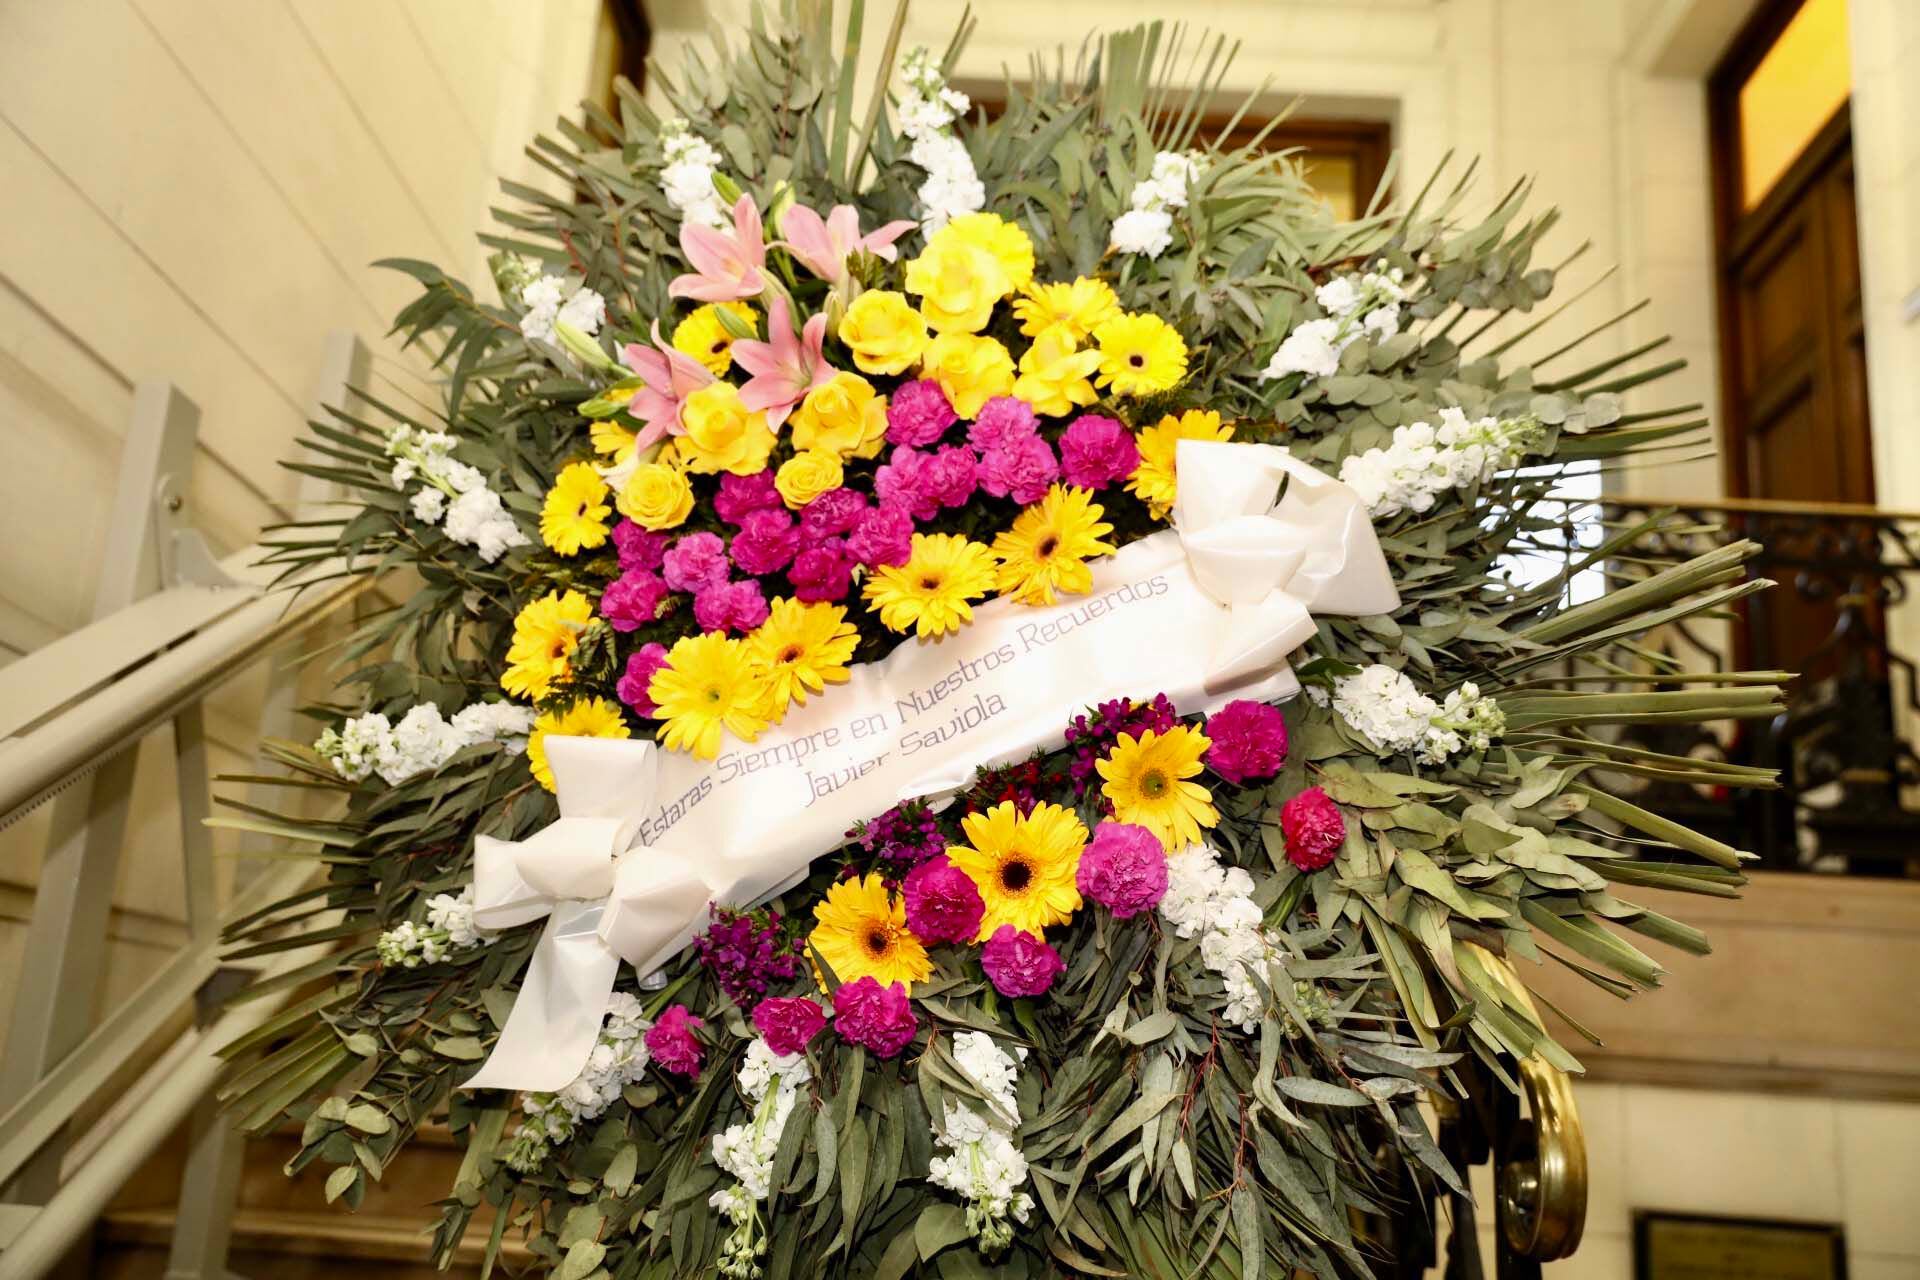 La ofrenda floral que envió la familia Saviola al velatorio: "Estarás siempre en nuestros recuerdos" (Foto: Teleshow/Chula Valerga)